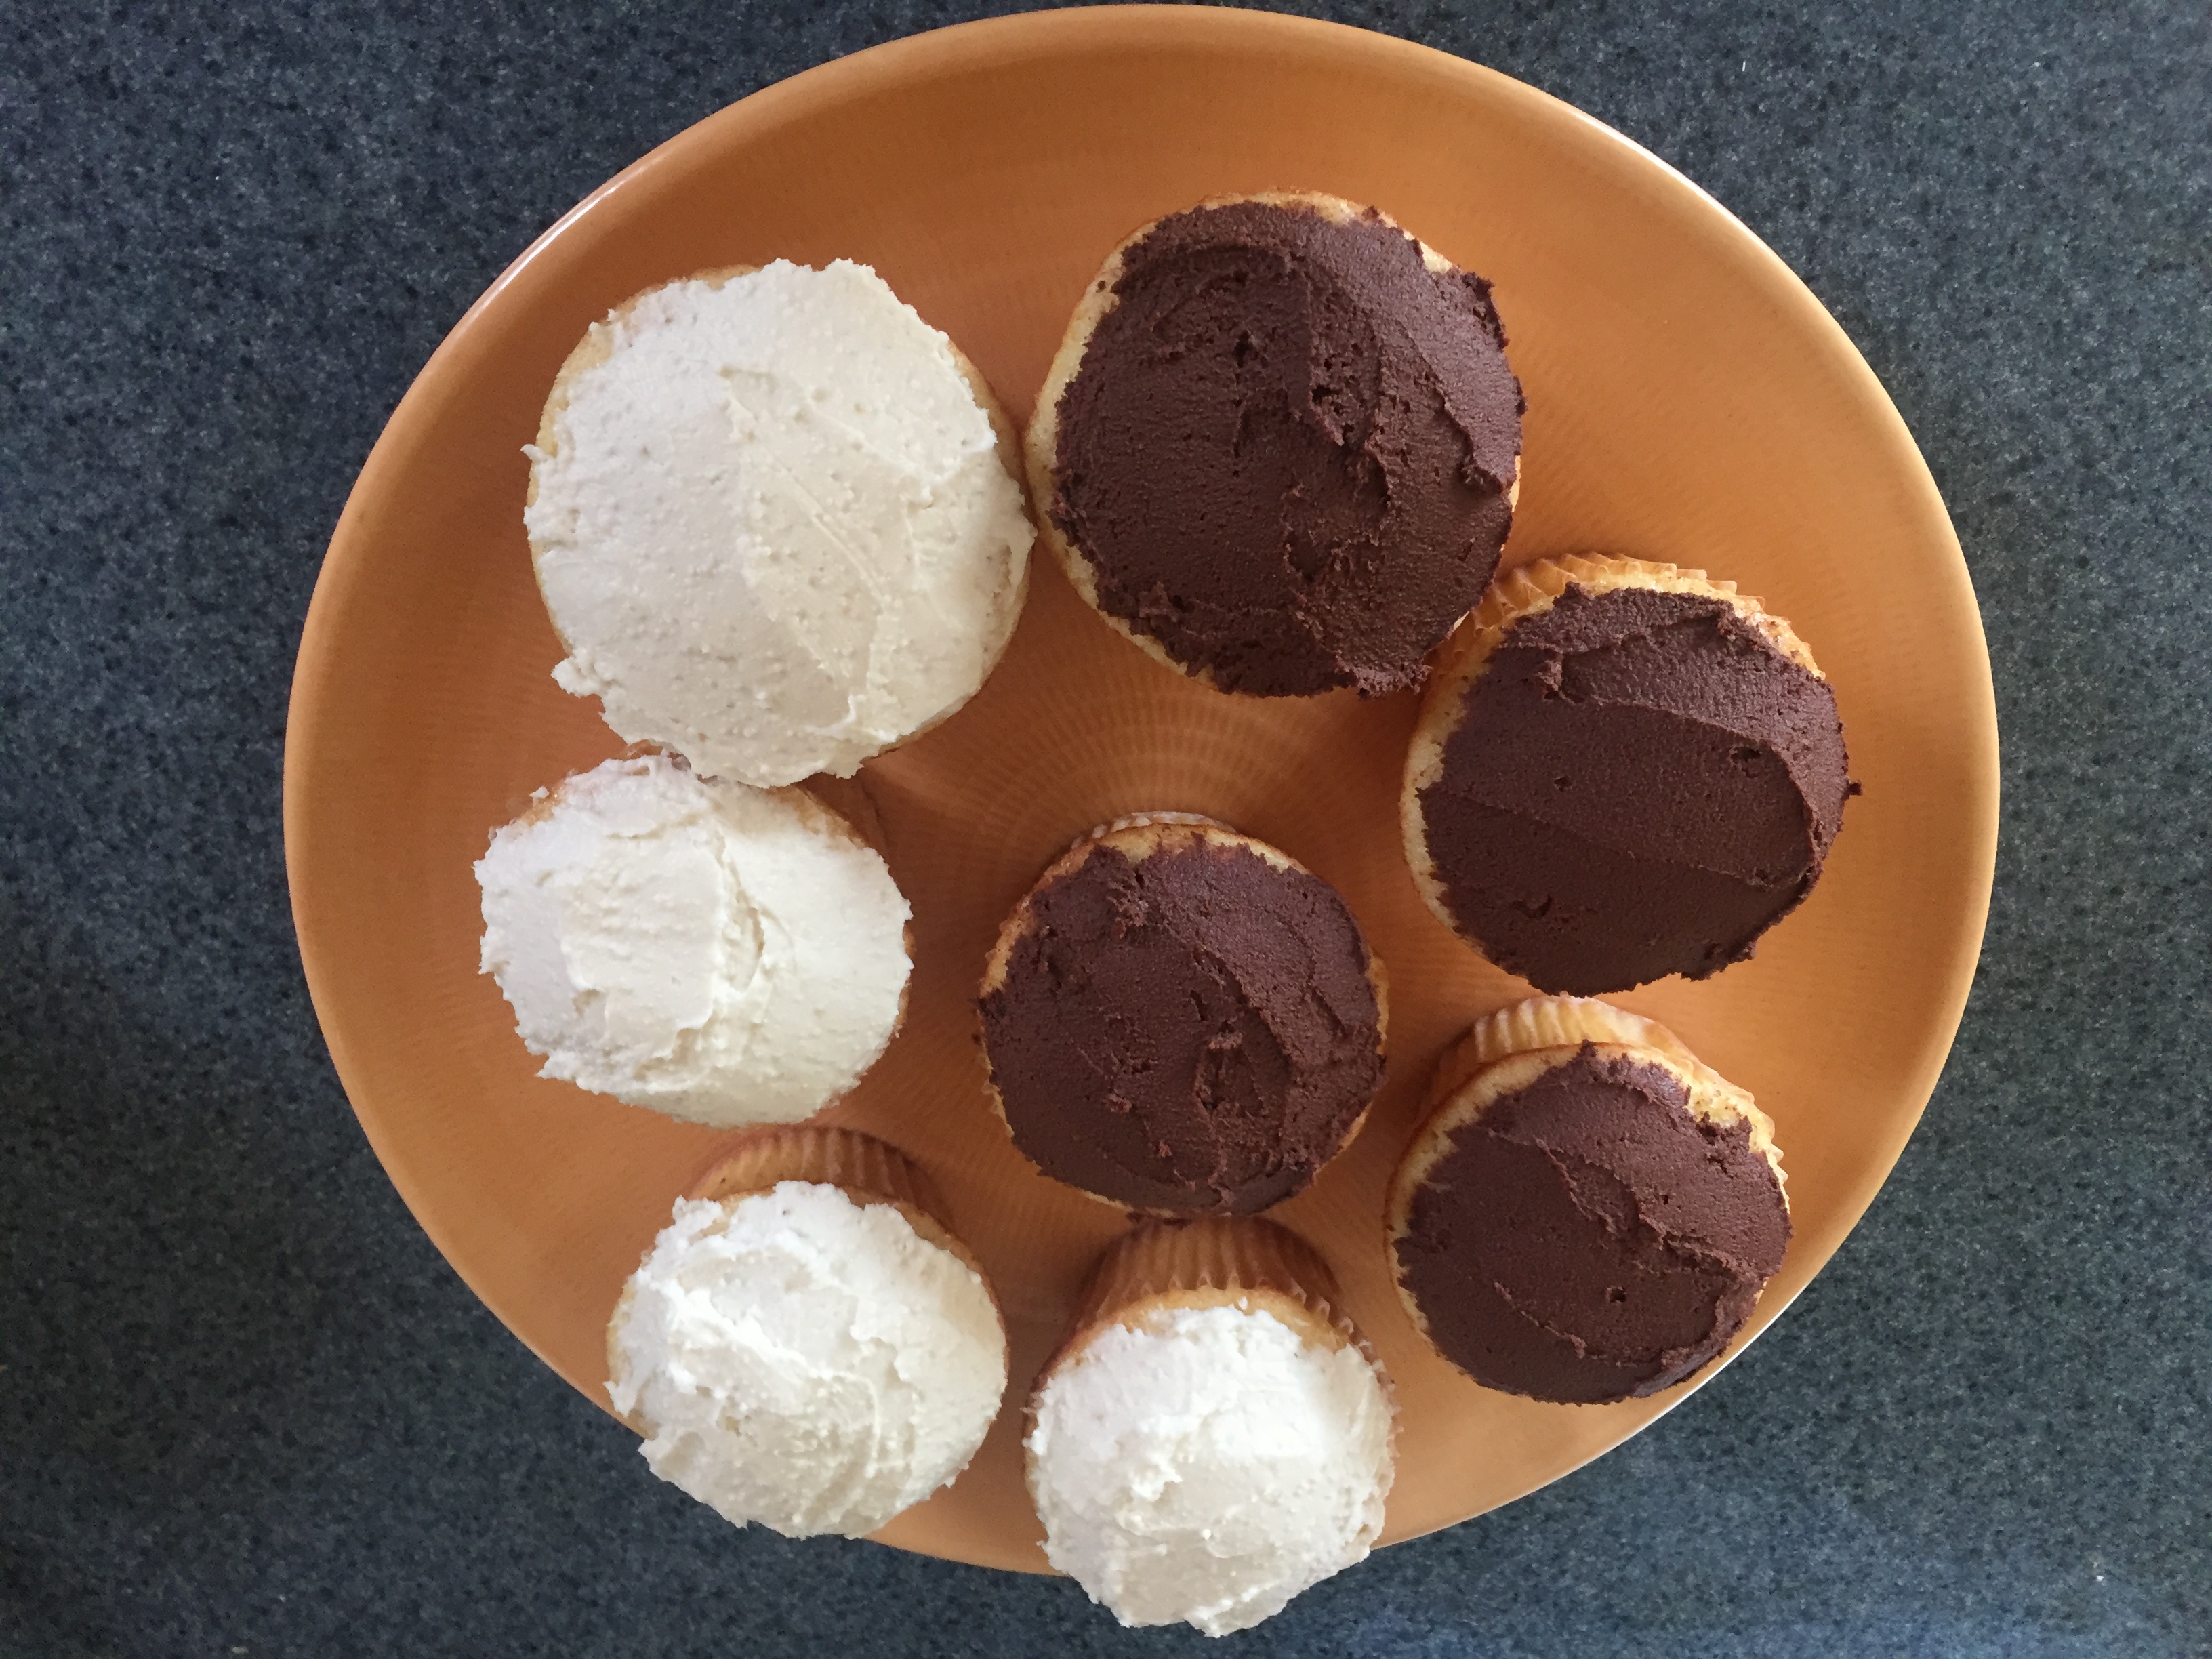 Cuatro cupcakes con glaseado de chocolate y cuatro cupcakes con glaseado de vainilla dispuestos en un plato naranja.